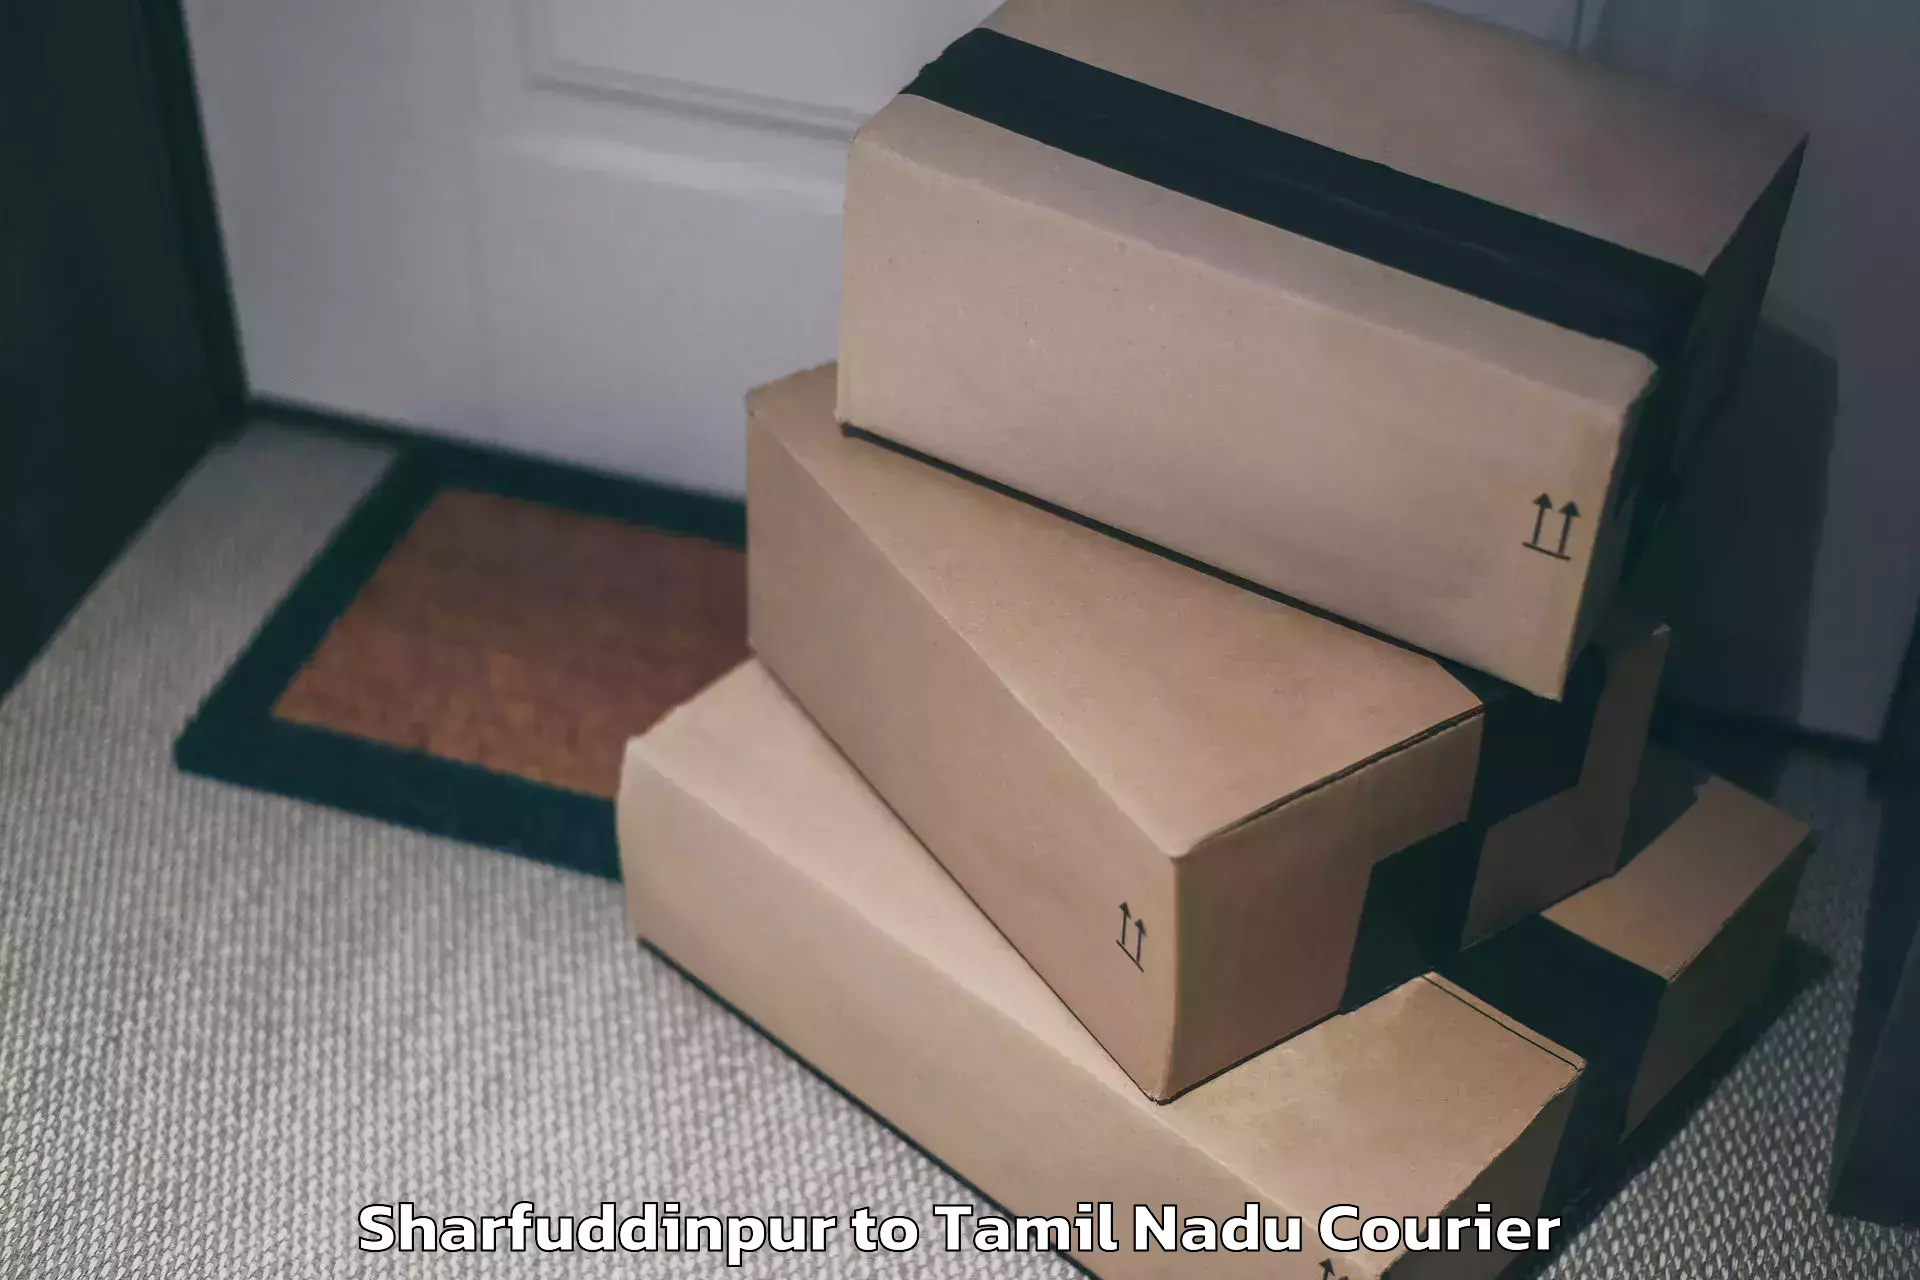 Luggage delivery news Sharfuddinpur to Rathinasabapathy Puram